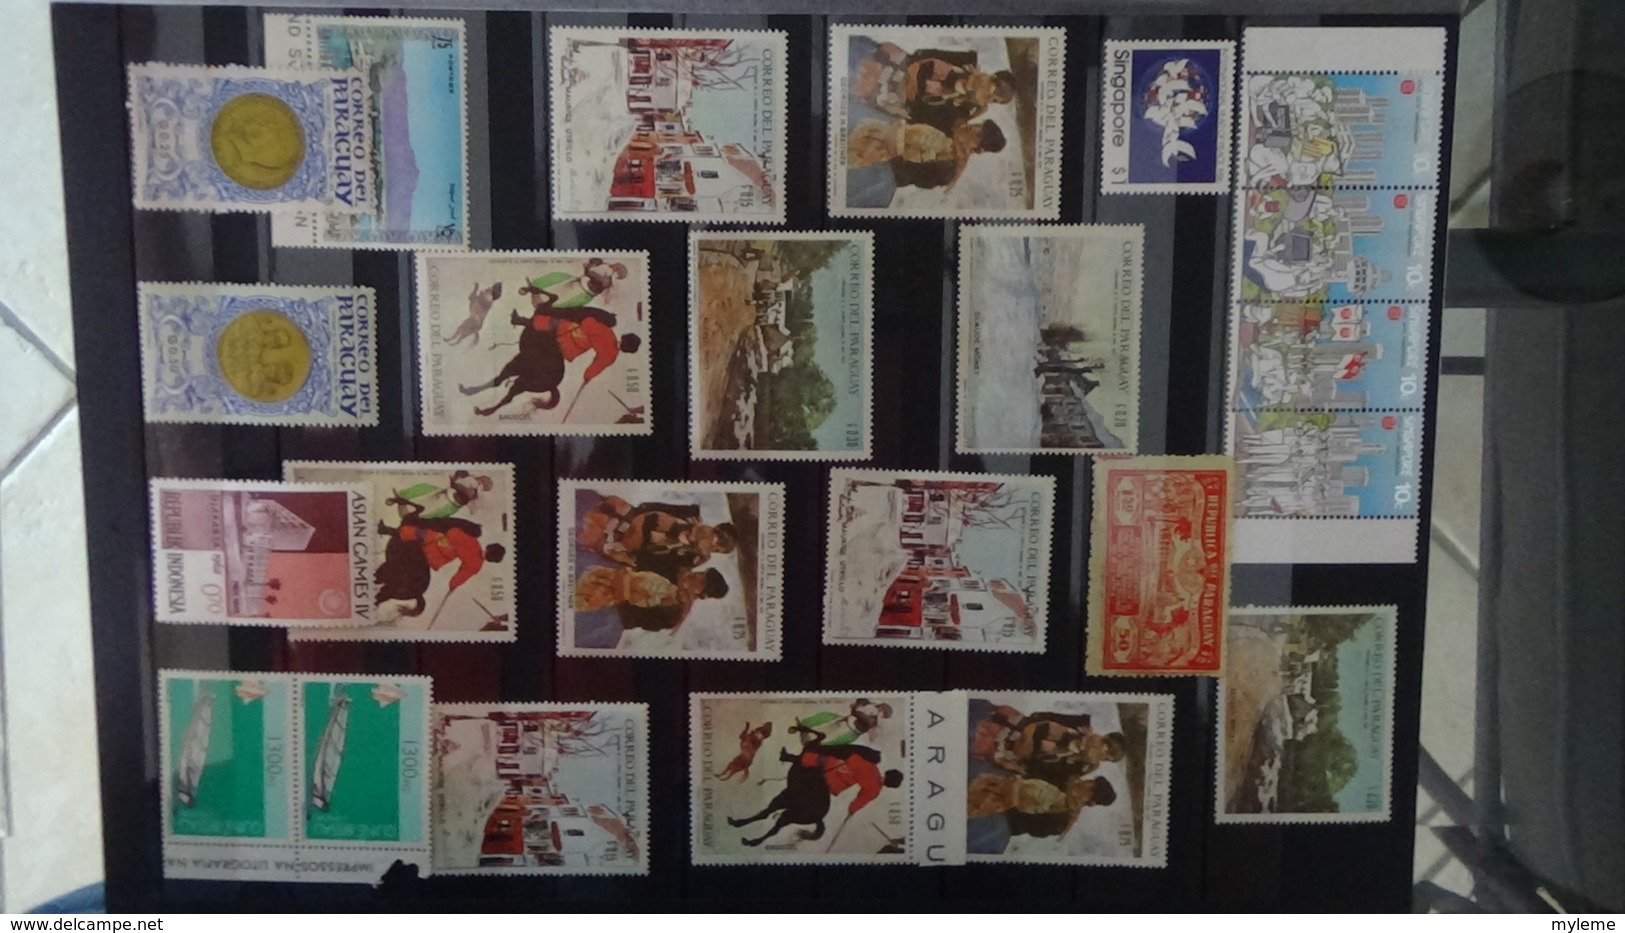 Collection de timbres et blocs ** du MONDE. PORT OFFERT DES 50 EUROS D'ACHATS. Voir commentaires